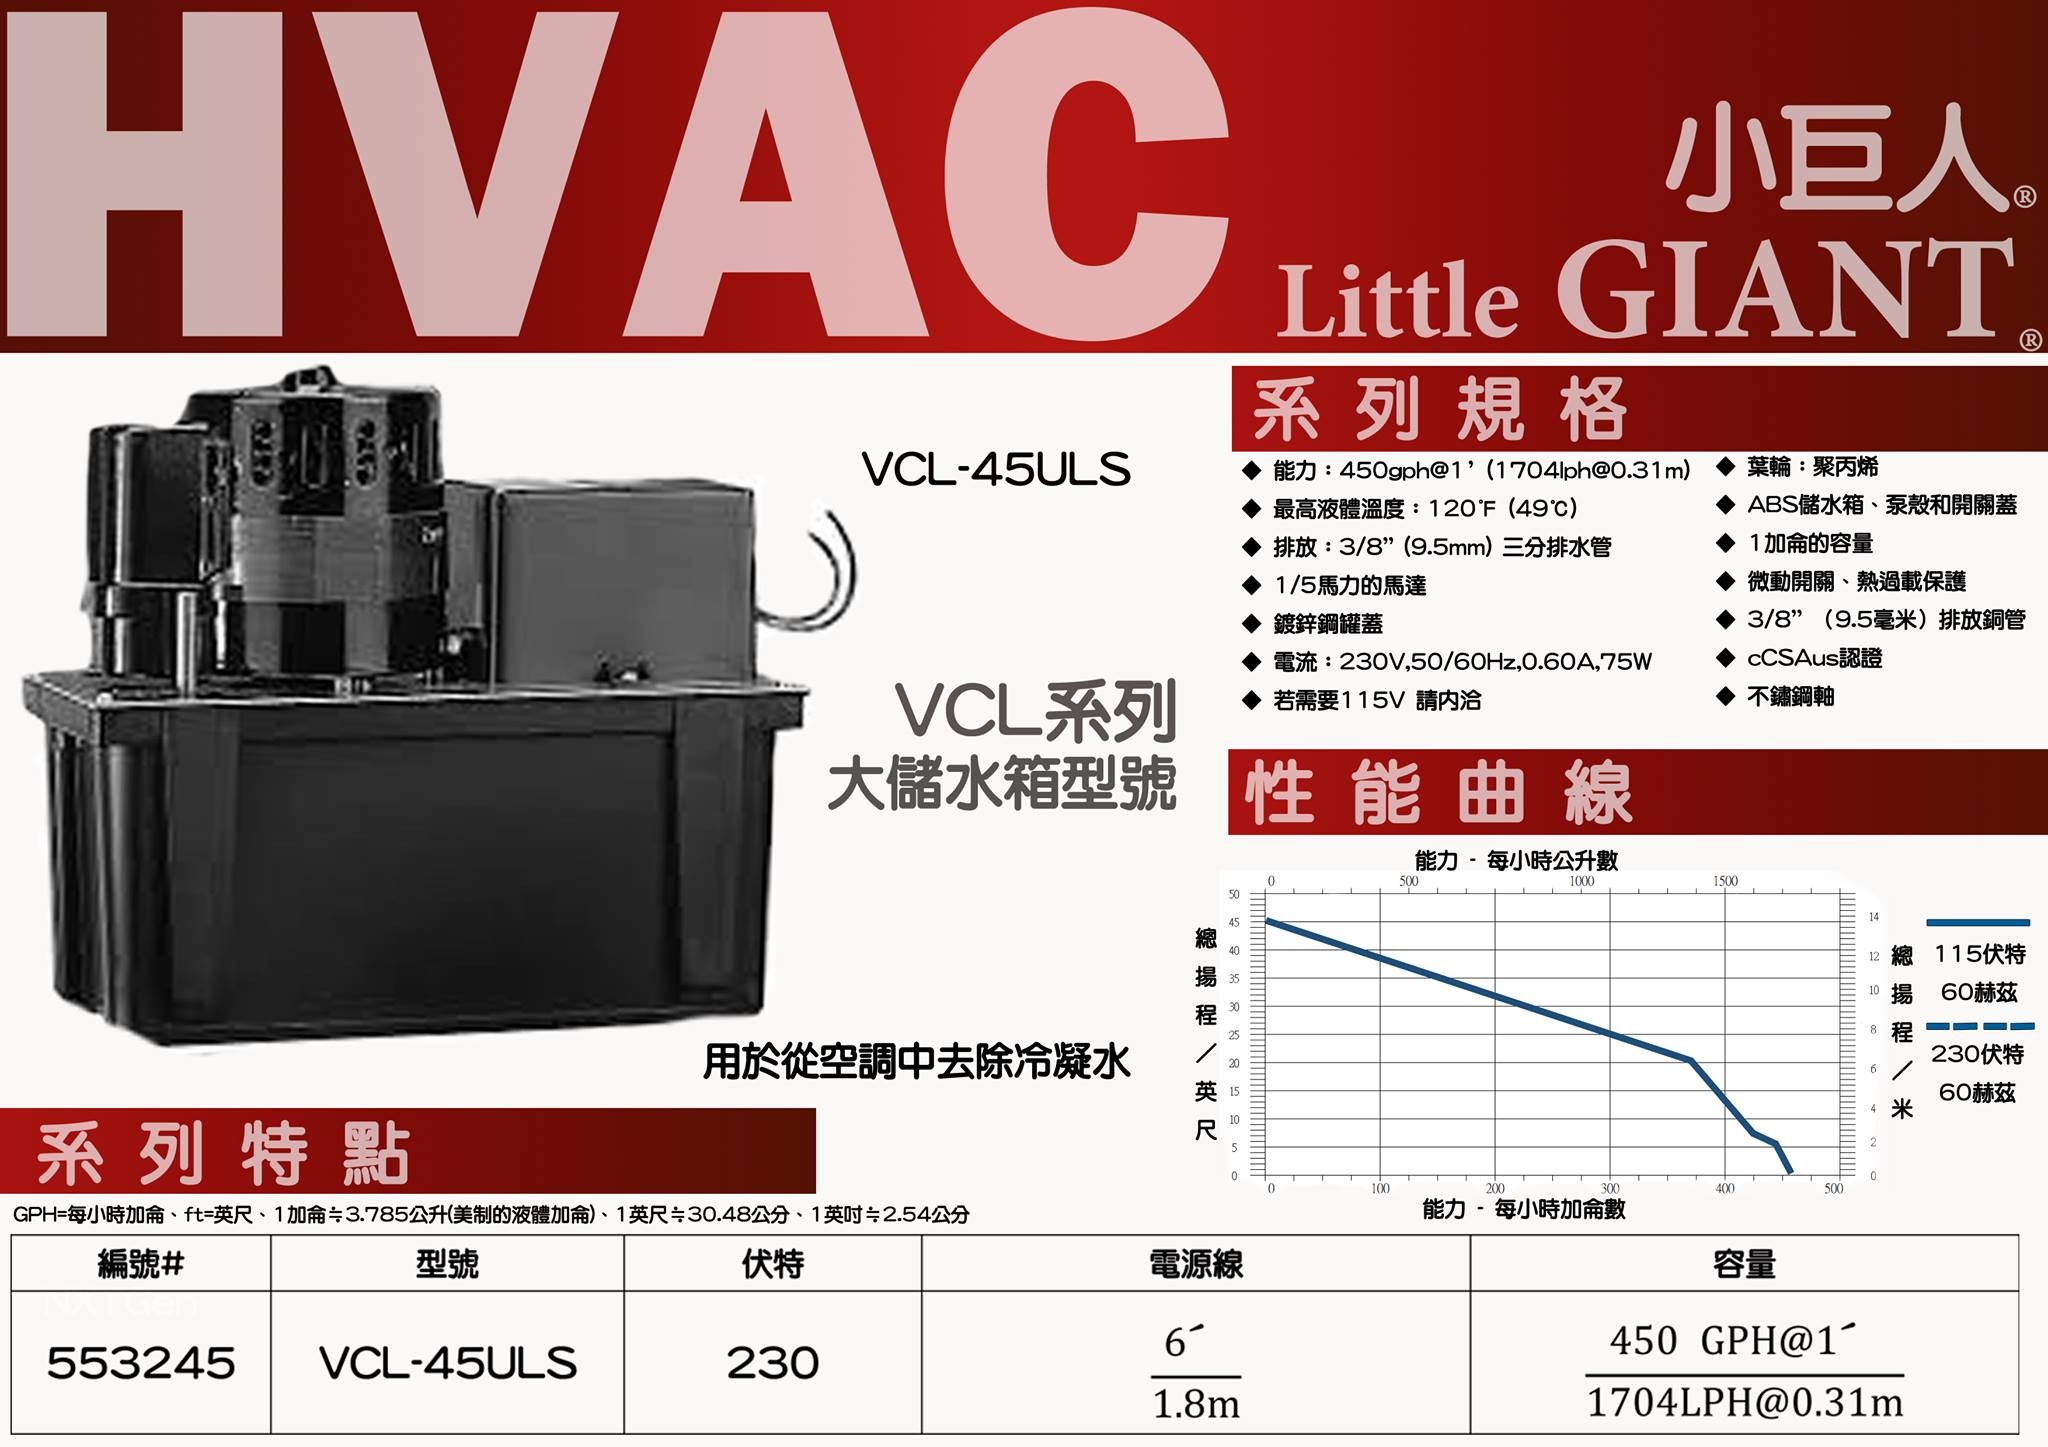 自動排水器VCL-45ULS-小巨人Little Giant